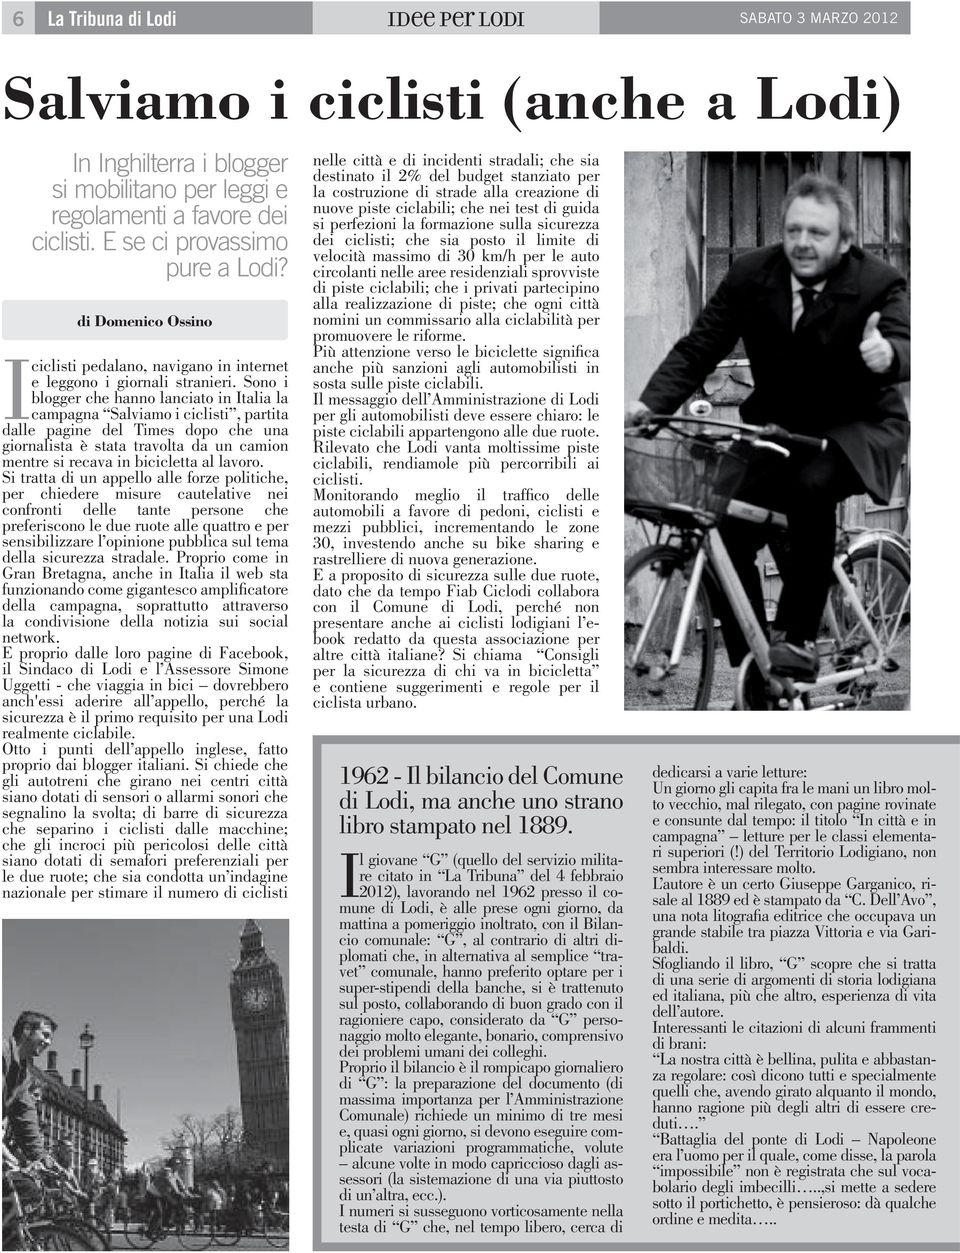 Sono i blogger che hanno lanciato in Italia la campagna Salviamo i ciclisti, partita dalle pagine del Times dopo che una giornalista è stata travolta da un camion mentre si recava in bicicletta al